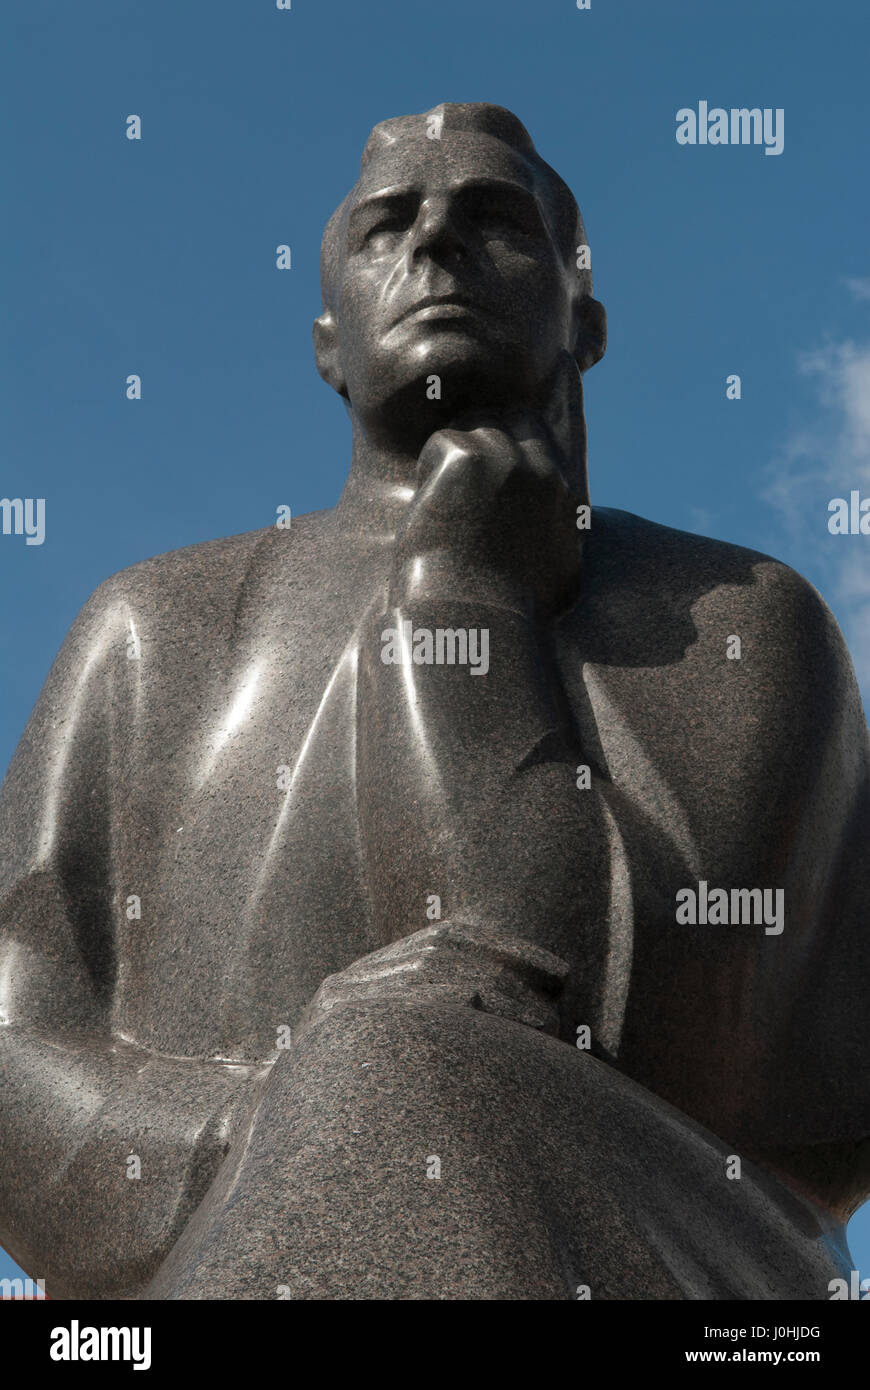 Kaunas Lituanie Statue de Maironis, le nom de plume du prêtre Jonas Maciulus l'un des plus célèbres poètes de la Lituanie. Place de l'Hôtel de Ville Vieille Ville 2017 2010s, HOMER SYKES Banque D'Images